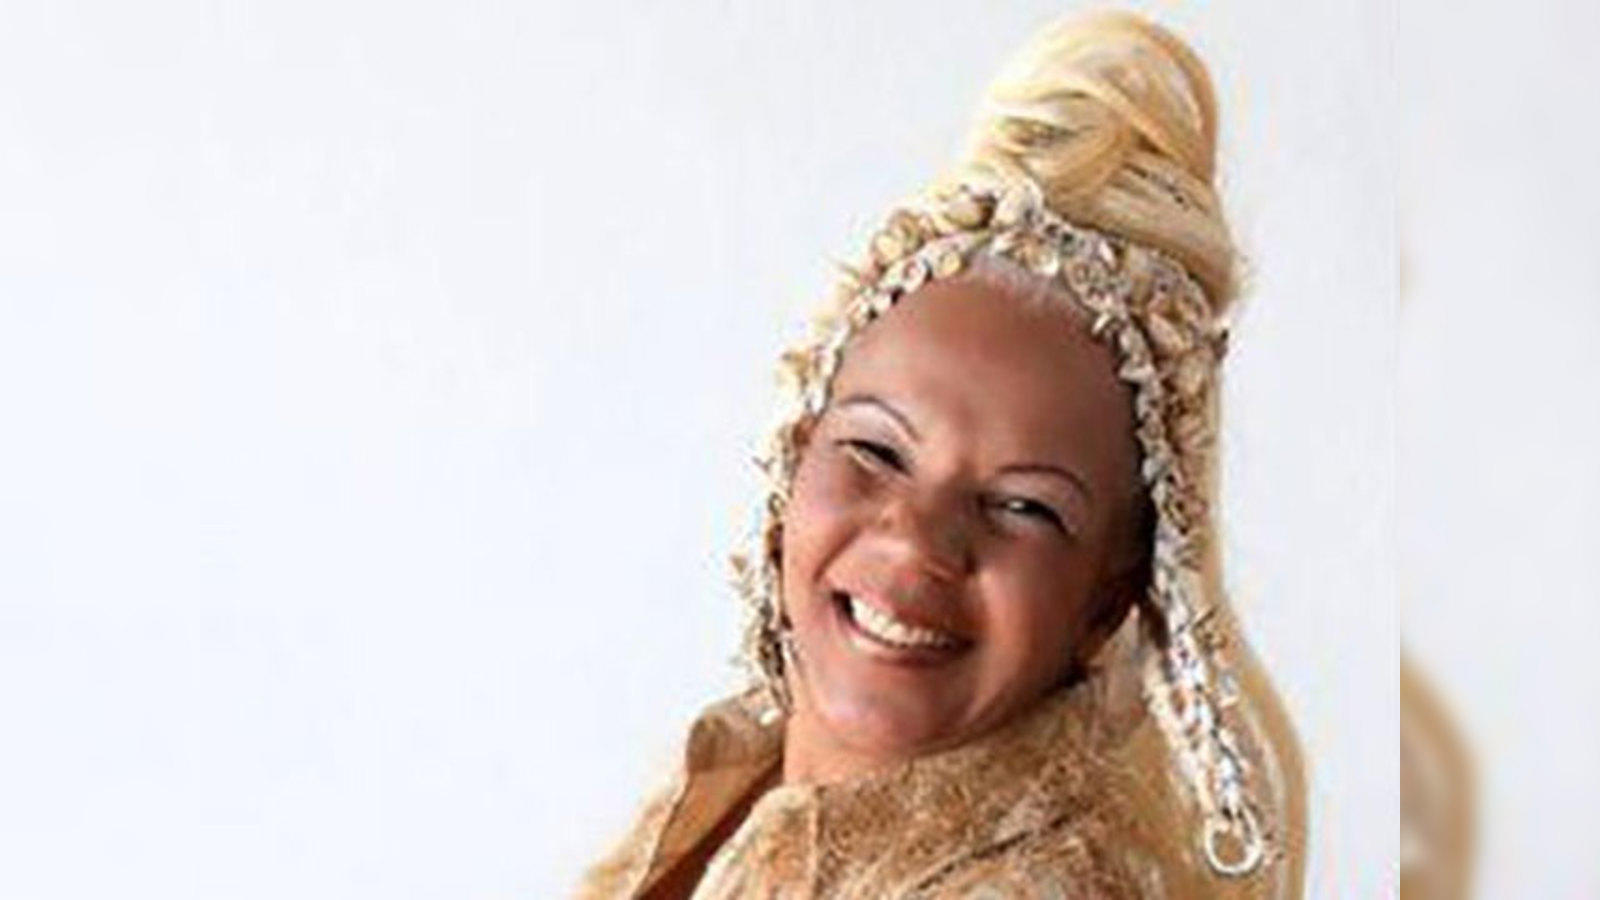 Lambada' singer Loalwa Braz found dead in Brazil - The Economic